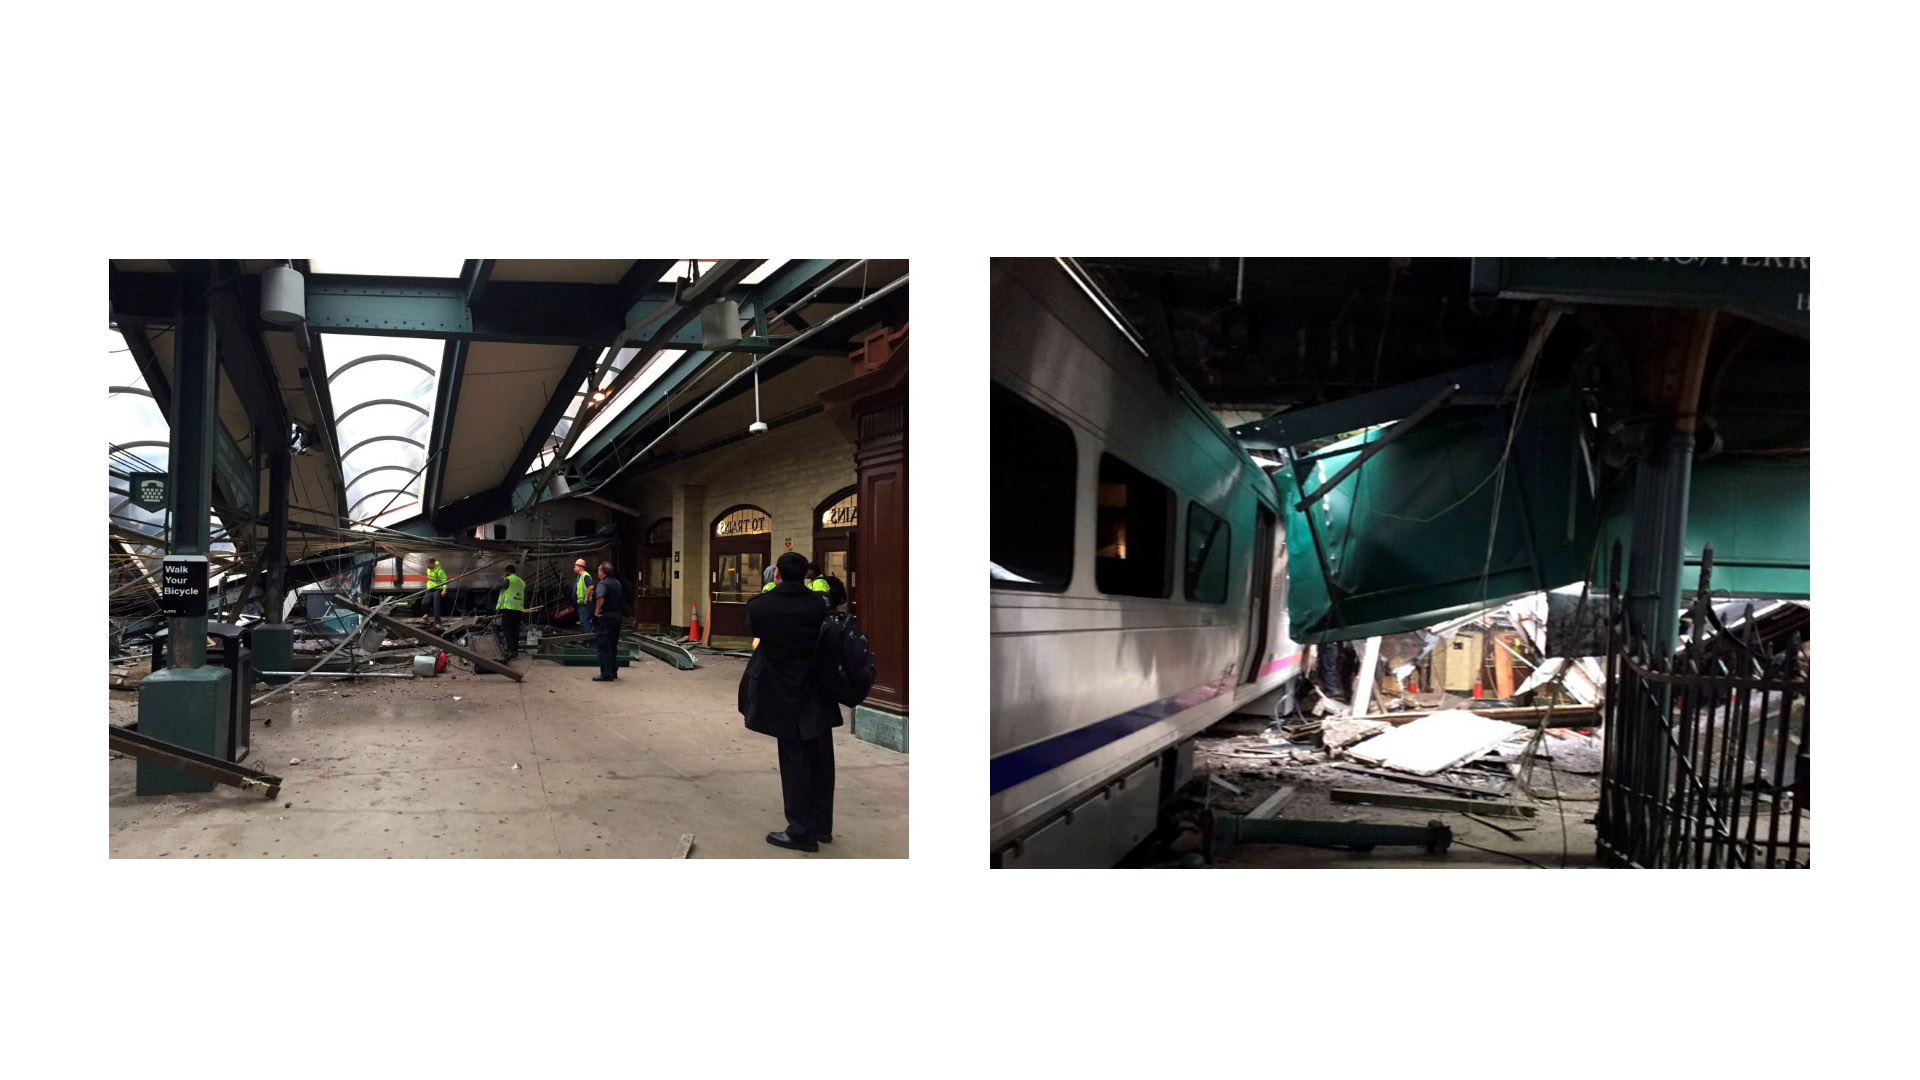 En el accidente ferroviario ocurrido en la estación de Hoboken se registran hasta el momento 3 fallecidos y al menos 100 heridos